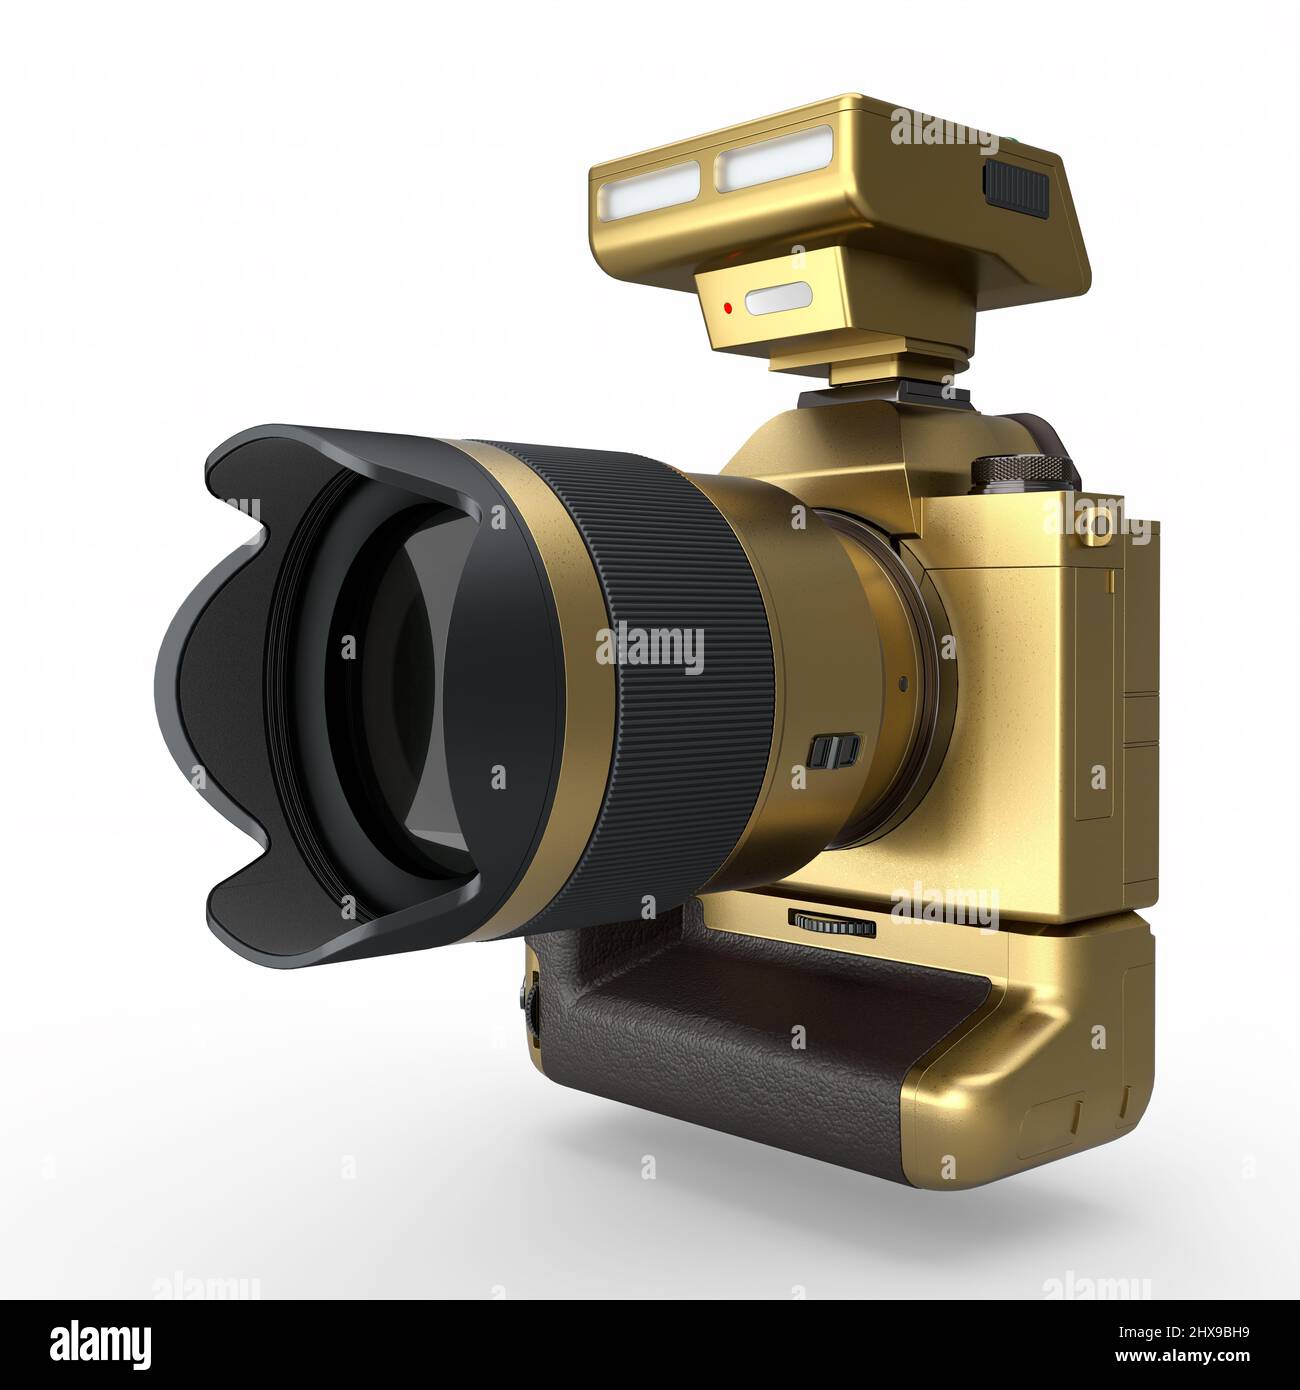 Concetto di oro inesistente DSLR fotocamera con obiettivo e flash esterno speedlight isolato su sfondo bianco. 3D rendering di fotografia professionale Foto Stock